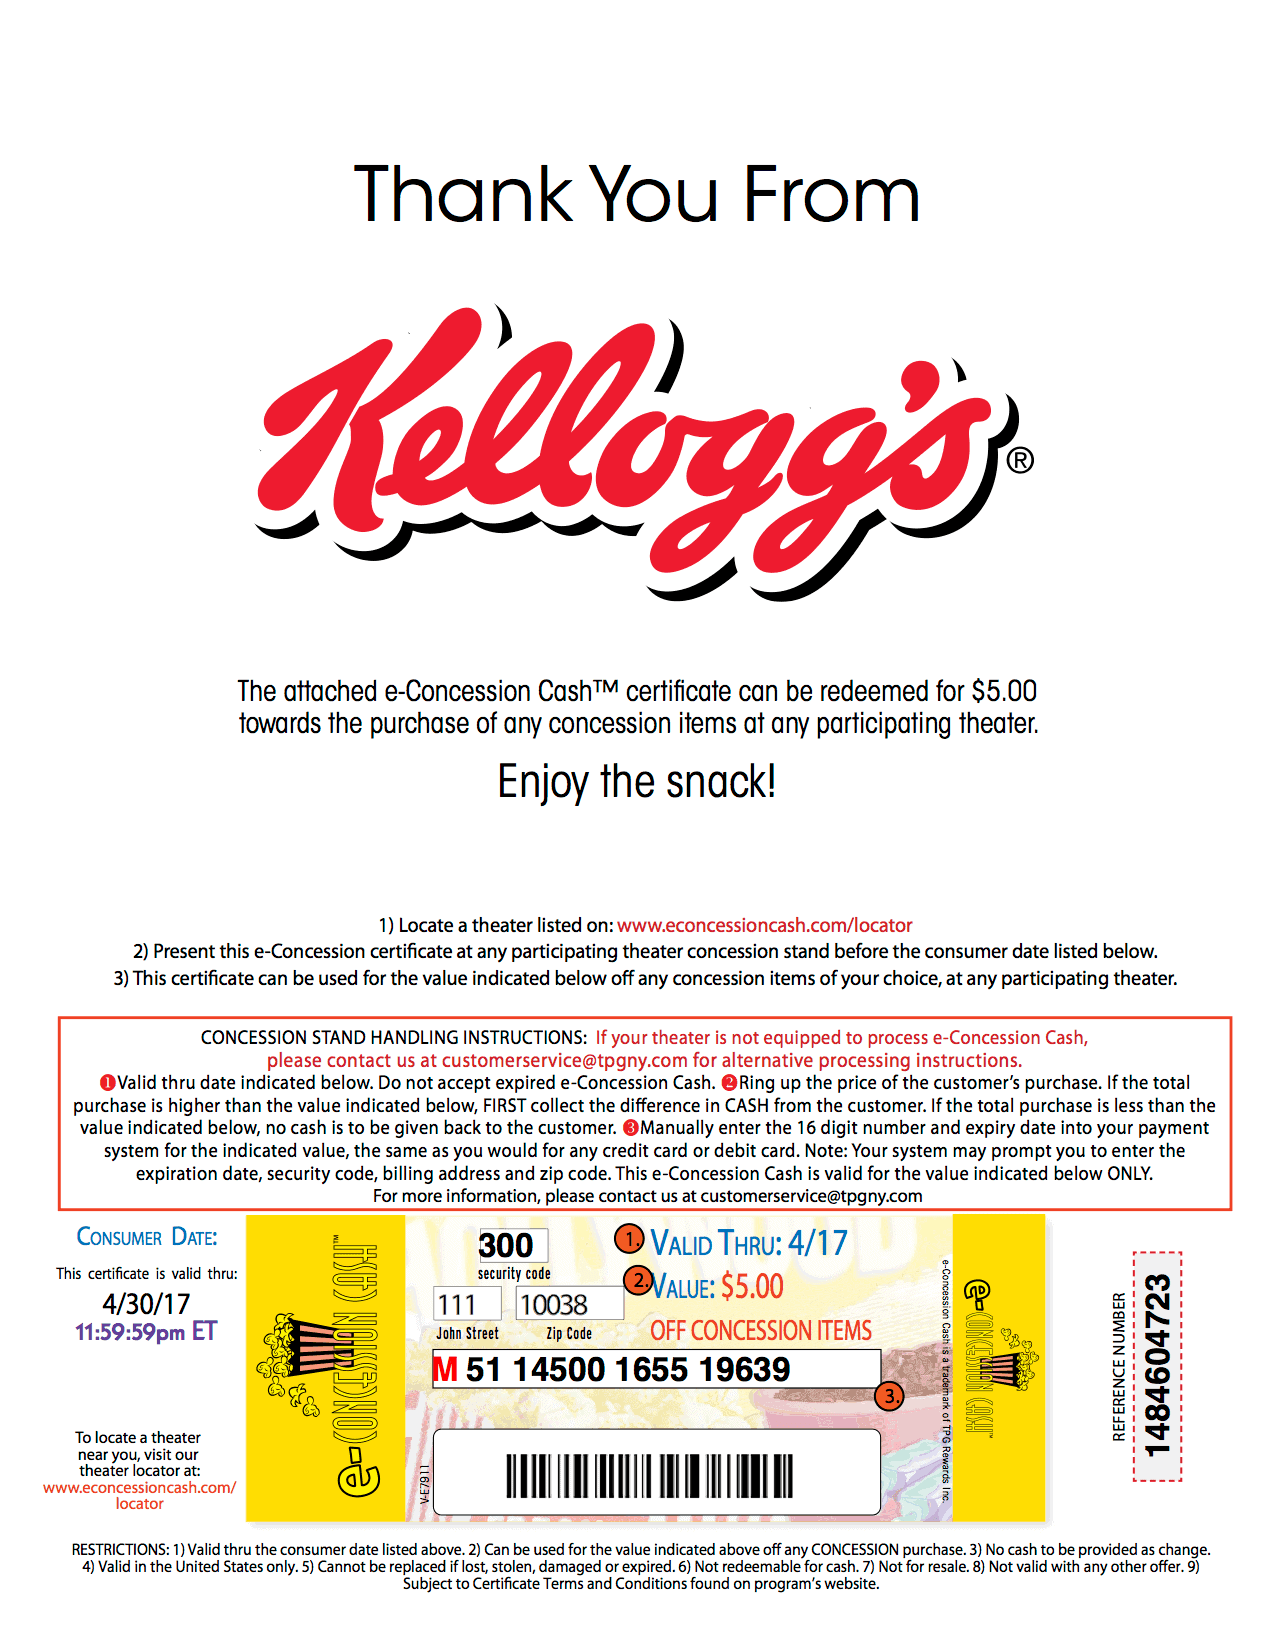 Kellogg's Mobile Coupon